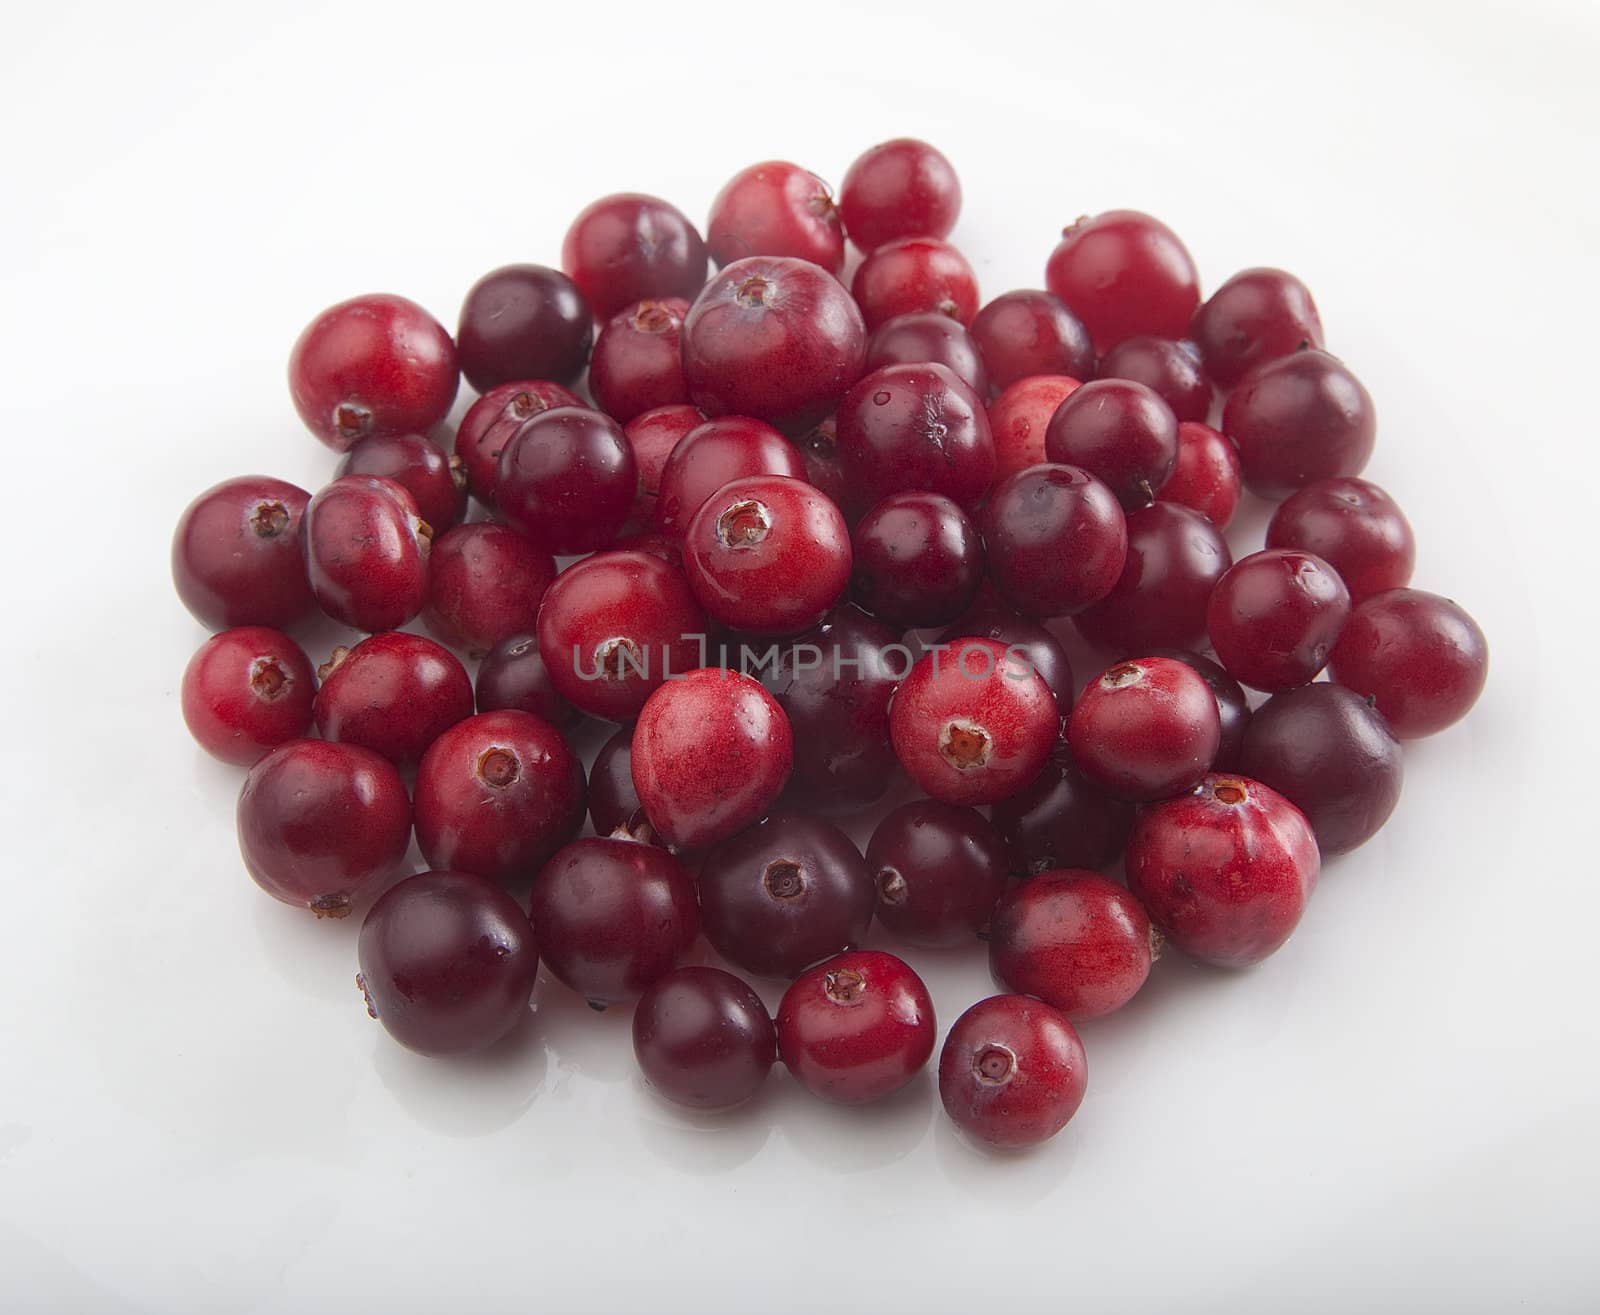 Cranberries by Angorius